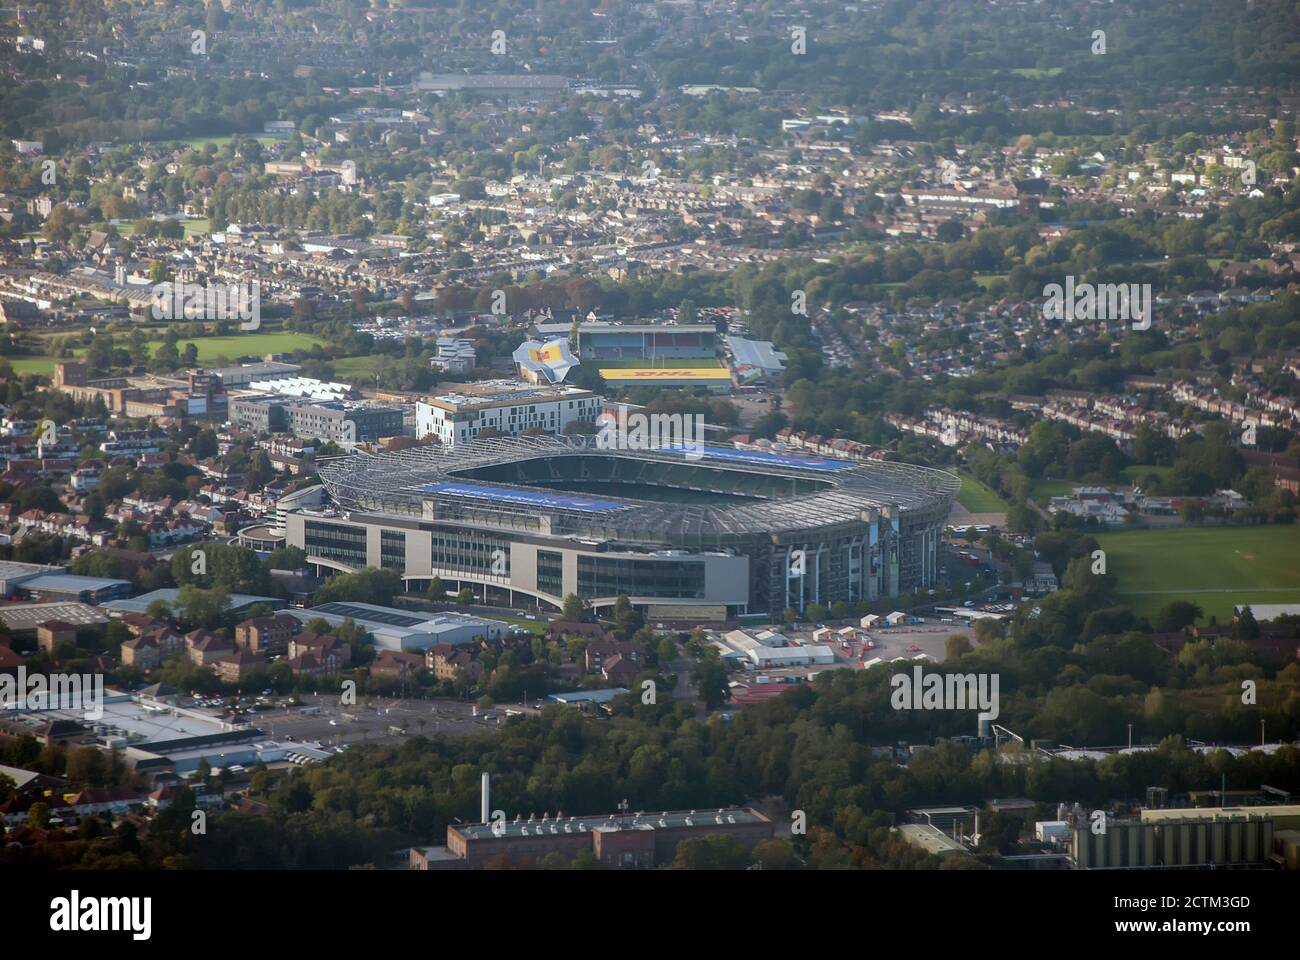 Twickenham Stadium in London from the air Stock Photo